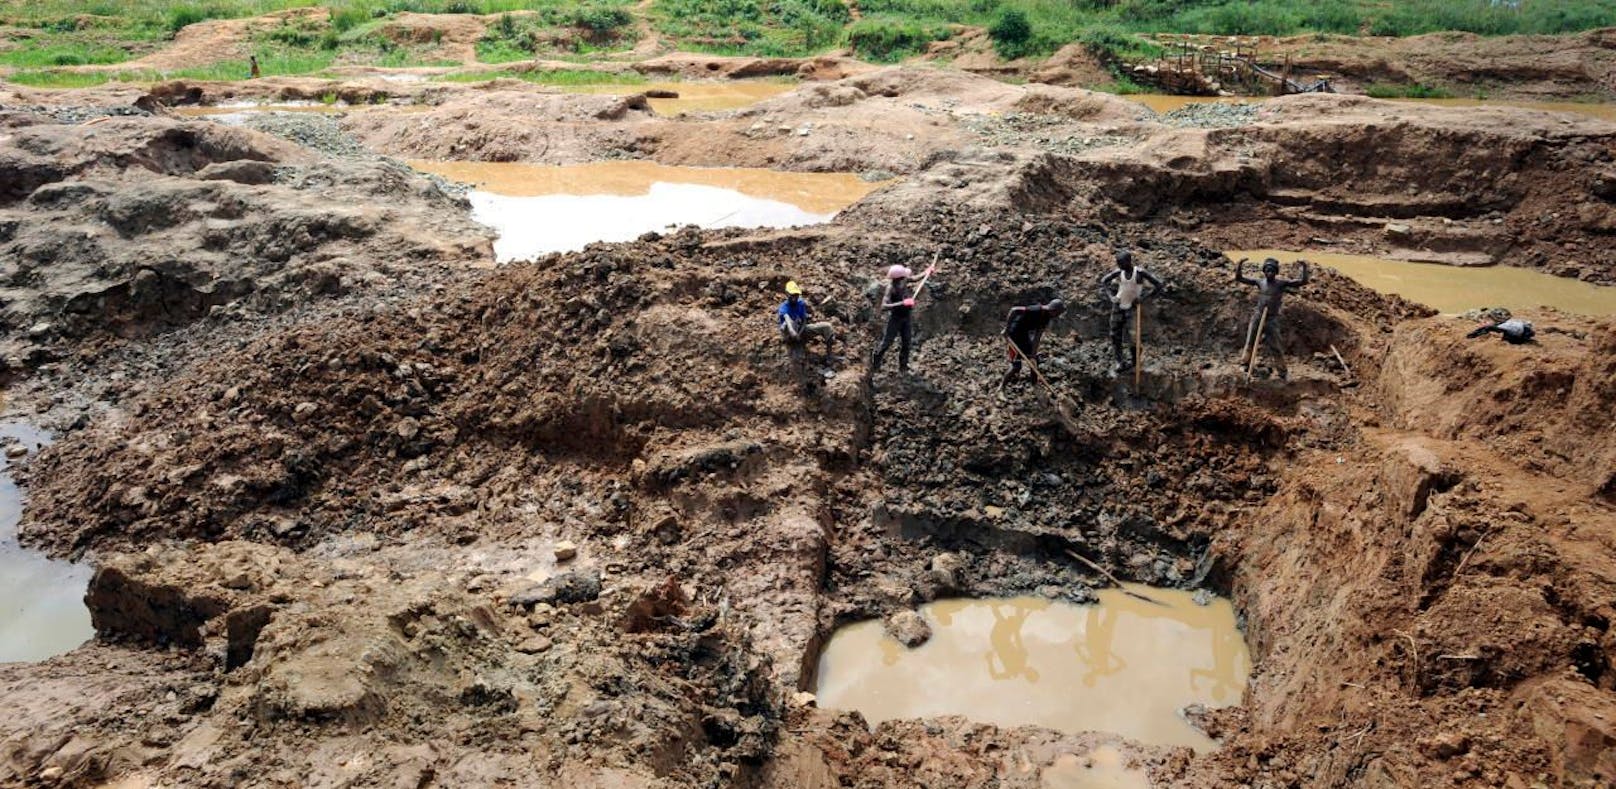 Das Unglück ereignete sich in einer Goldmine im Kongo.